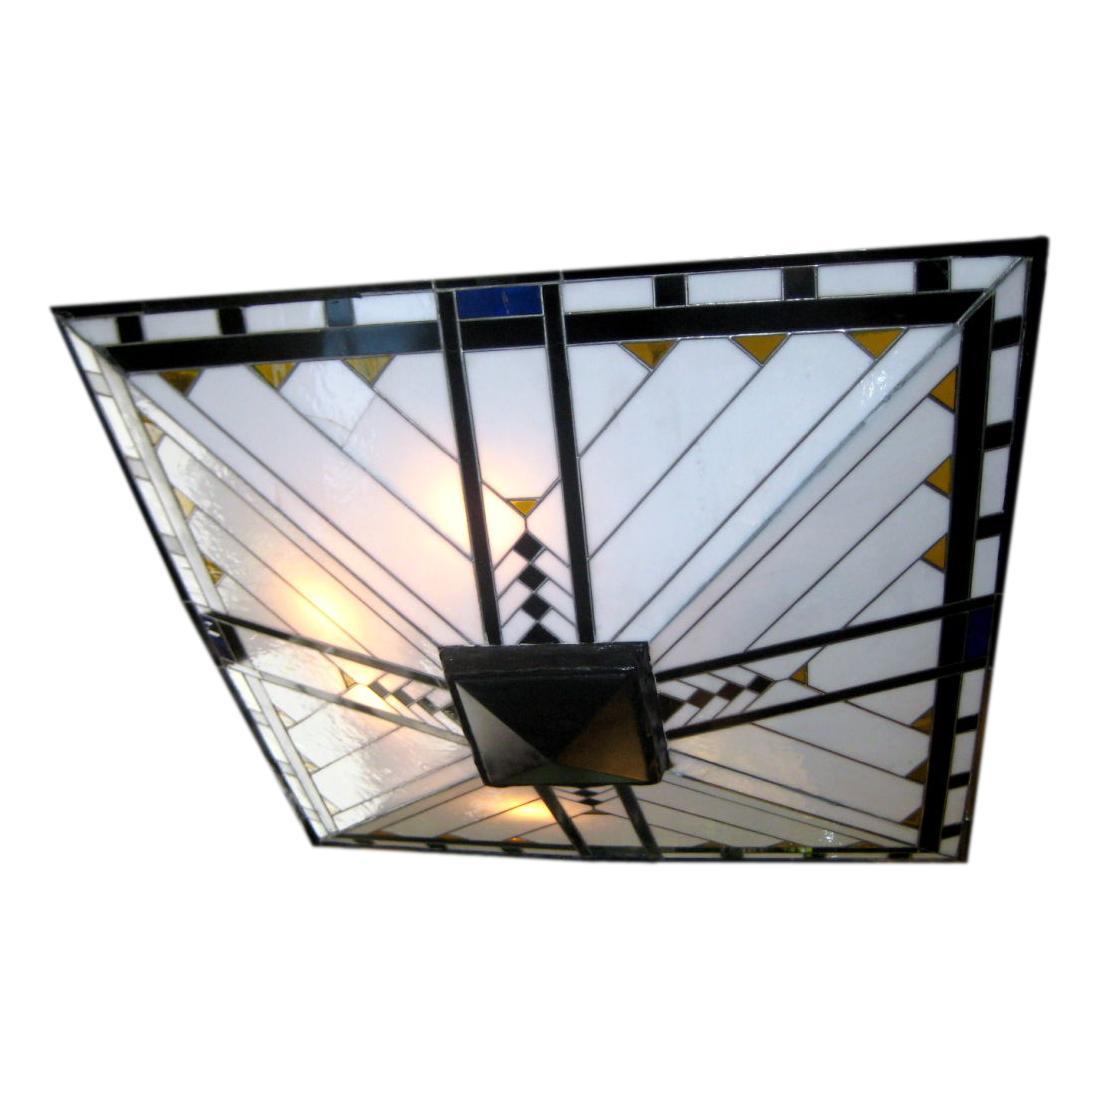 Ce luminaire en verre plombé et vitrail de style Art déco français des années 1930 est suspendu à quatre tiges et à un baldaquin carré.  8 lumières de chadelier.

Mesures :
Hauteur : 36
Longueur/largeur : 28